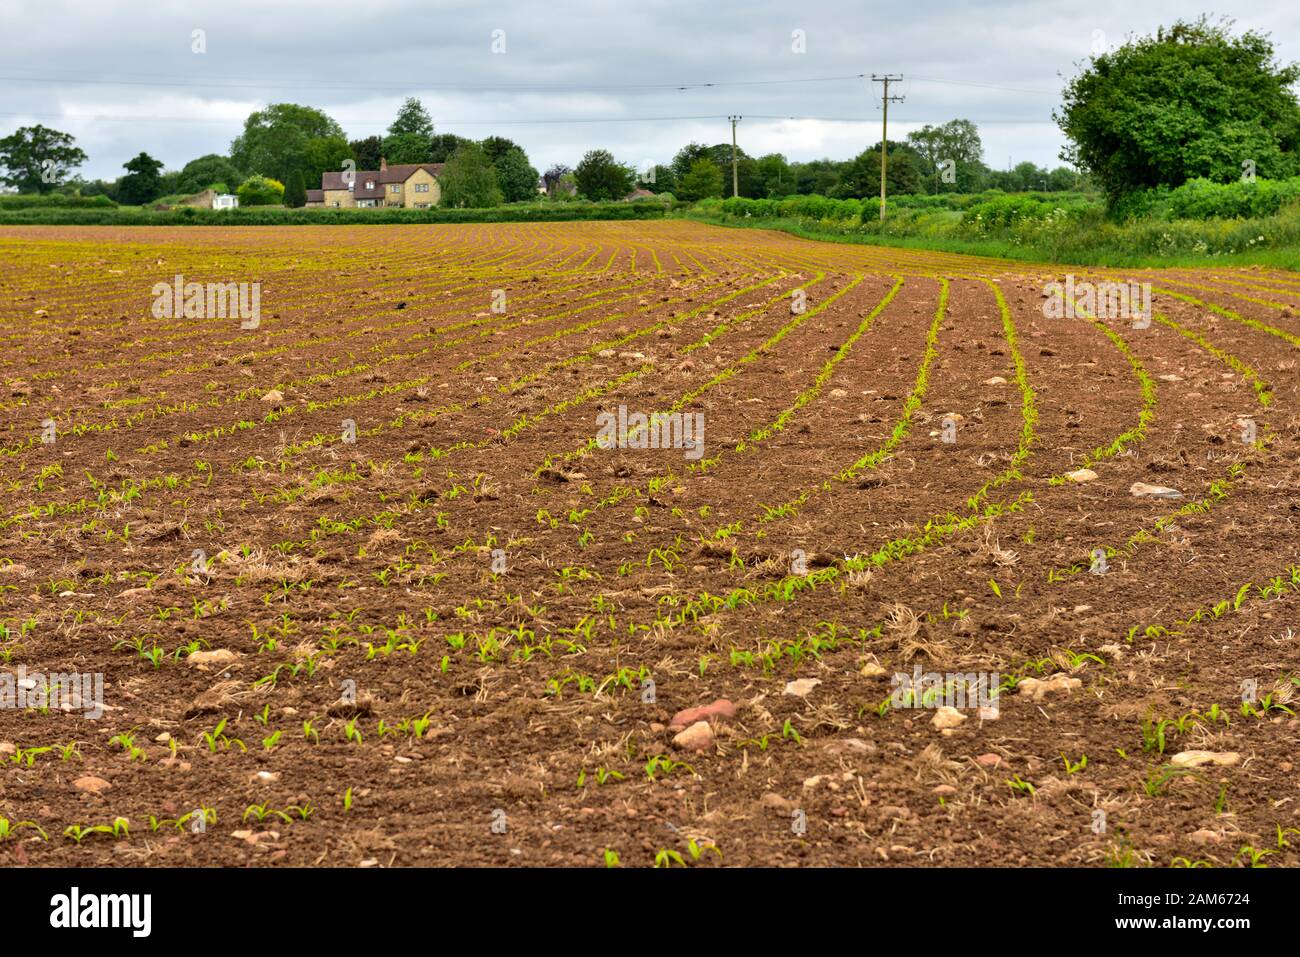 Campagna inglese con righe di nuovi germogli appena emergente in fattoria campo preparato, Somerset, Regno Unito Foto Stock